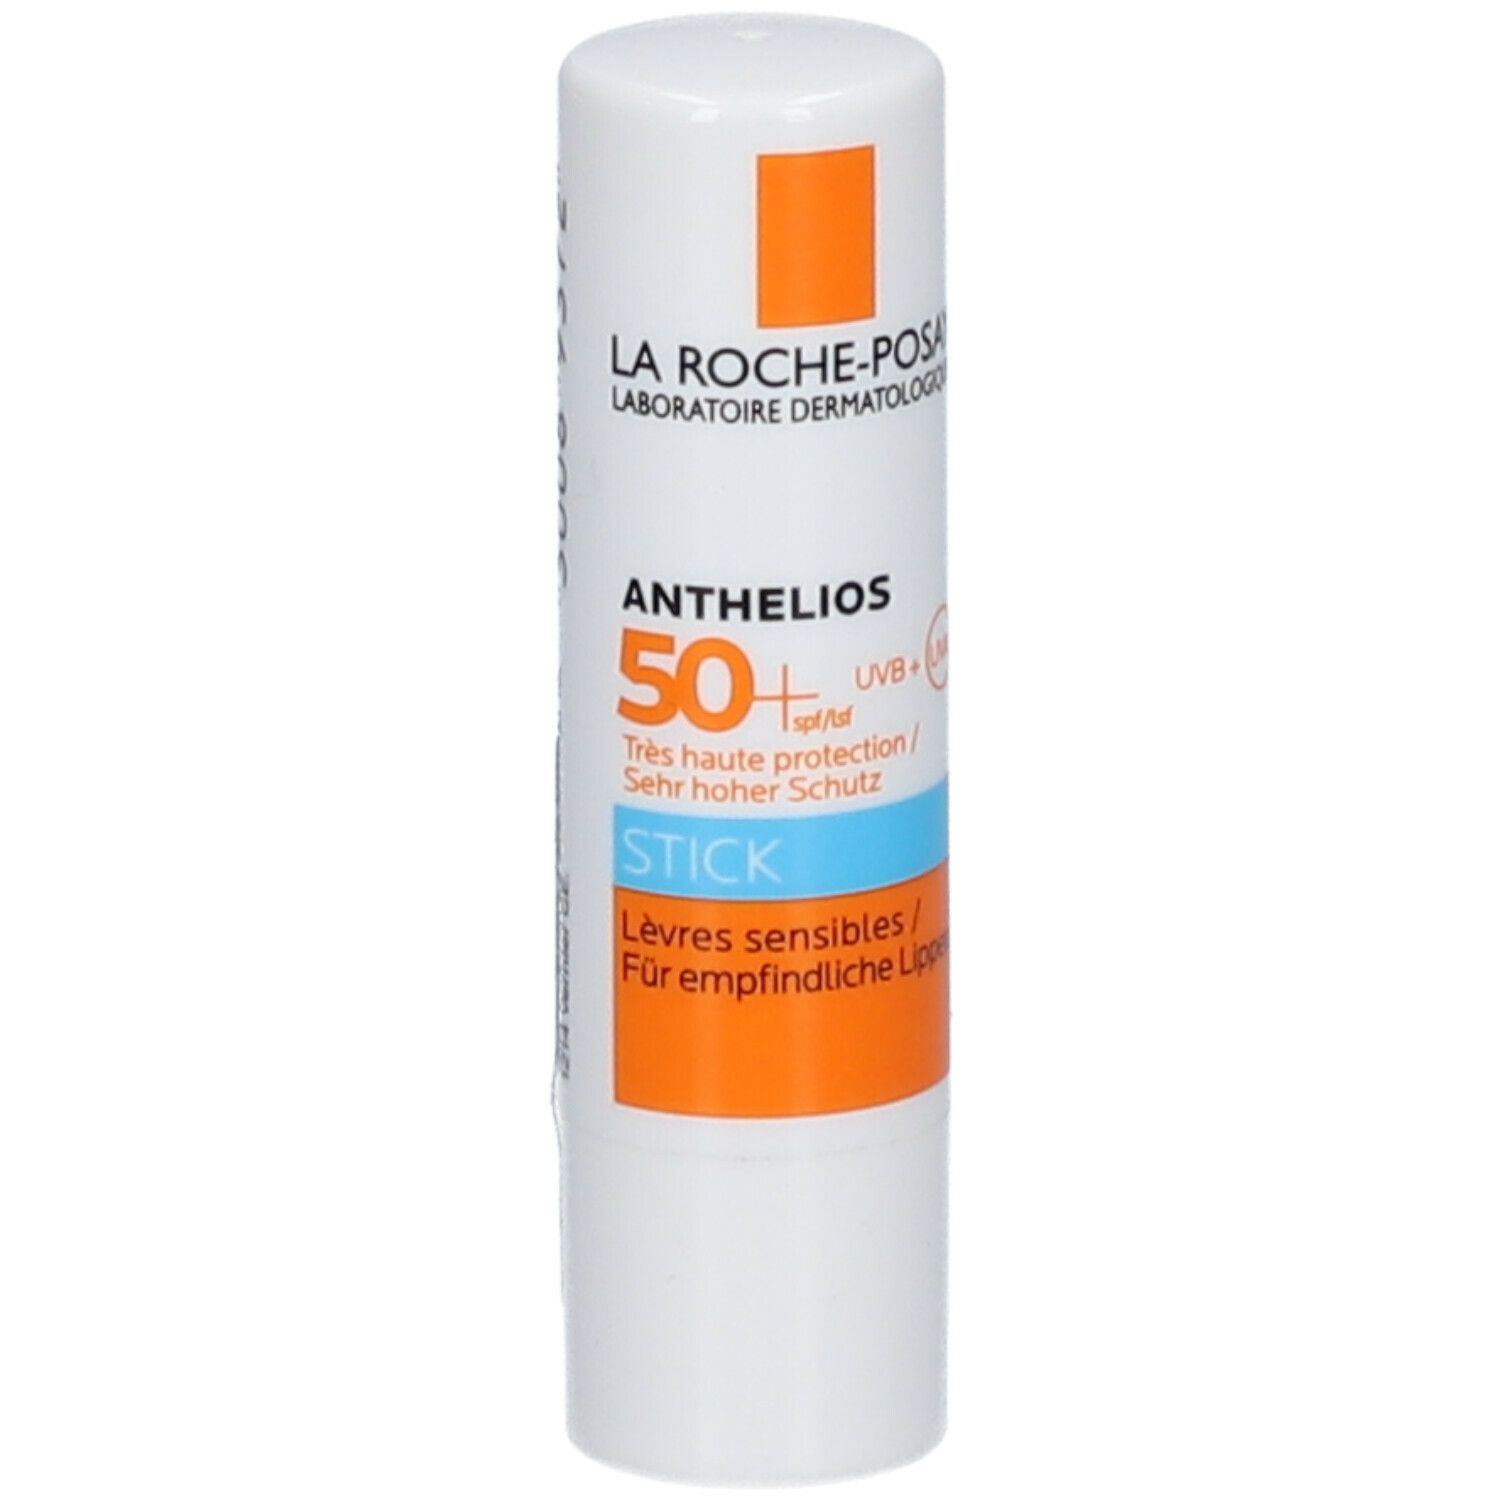 La Roche-Posay Anthelios Stick Solare Labbra 50+SPF 4,7 ml